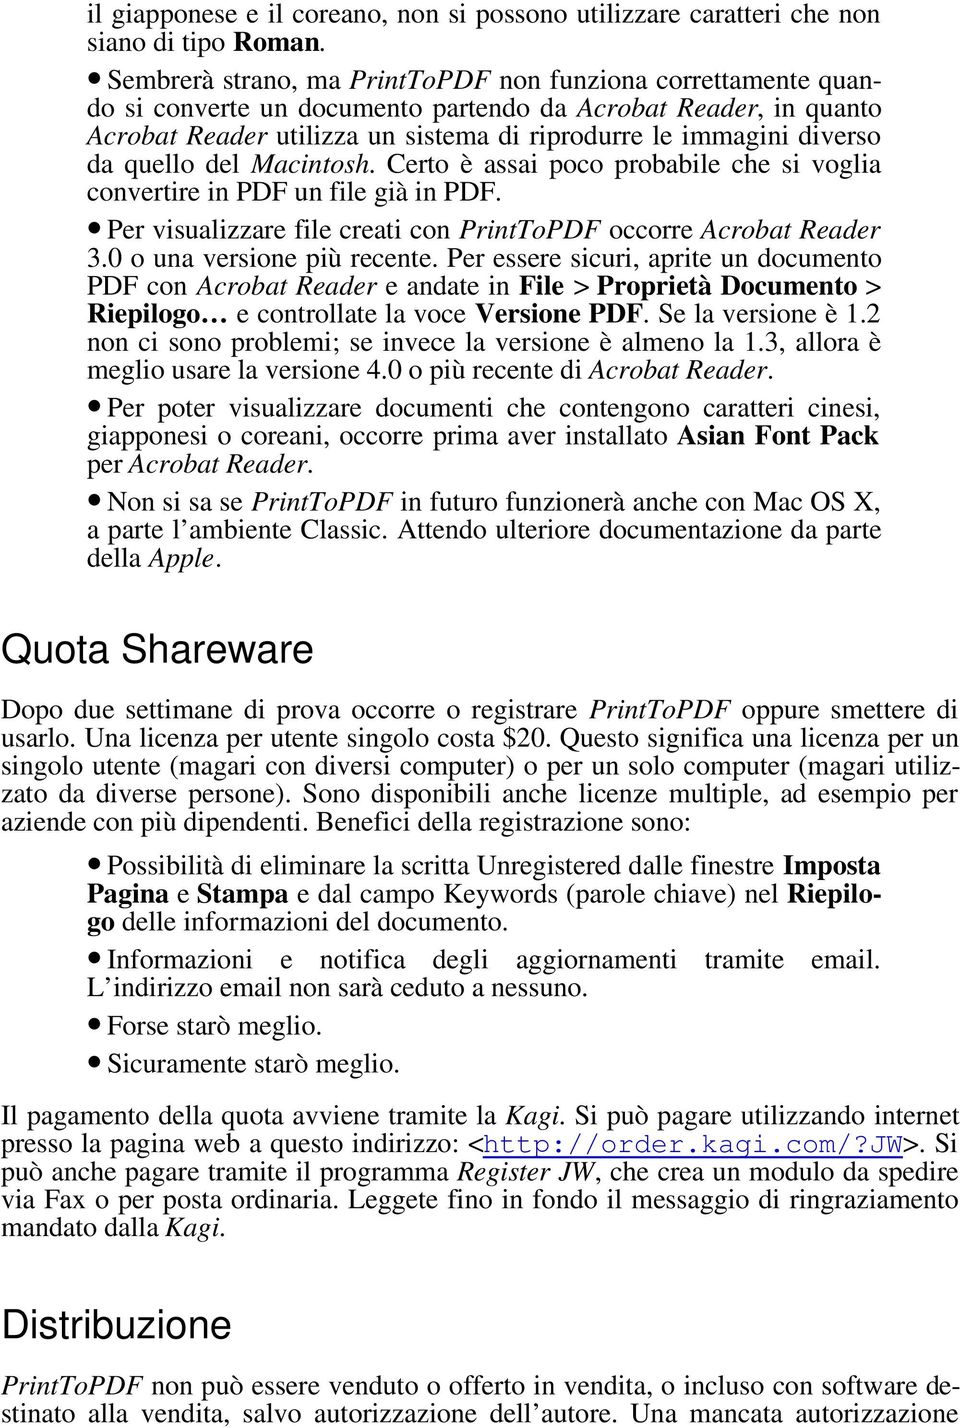 quello del Macintosh. Certo è assai poco probabile che si voglia convertire in PDF un file già in PDF. Per visualizzare file creati con PrintToPDF occorre Acrobat Reader 3.